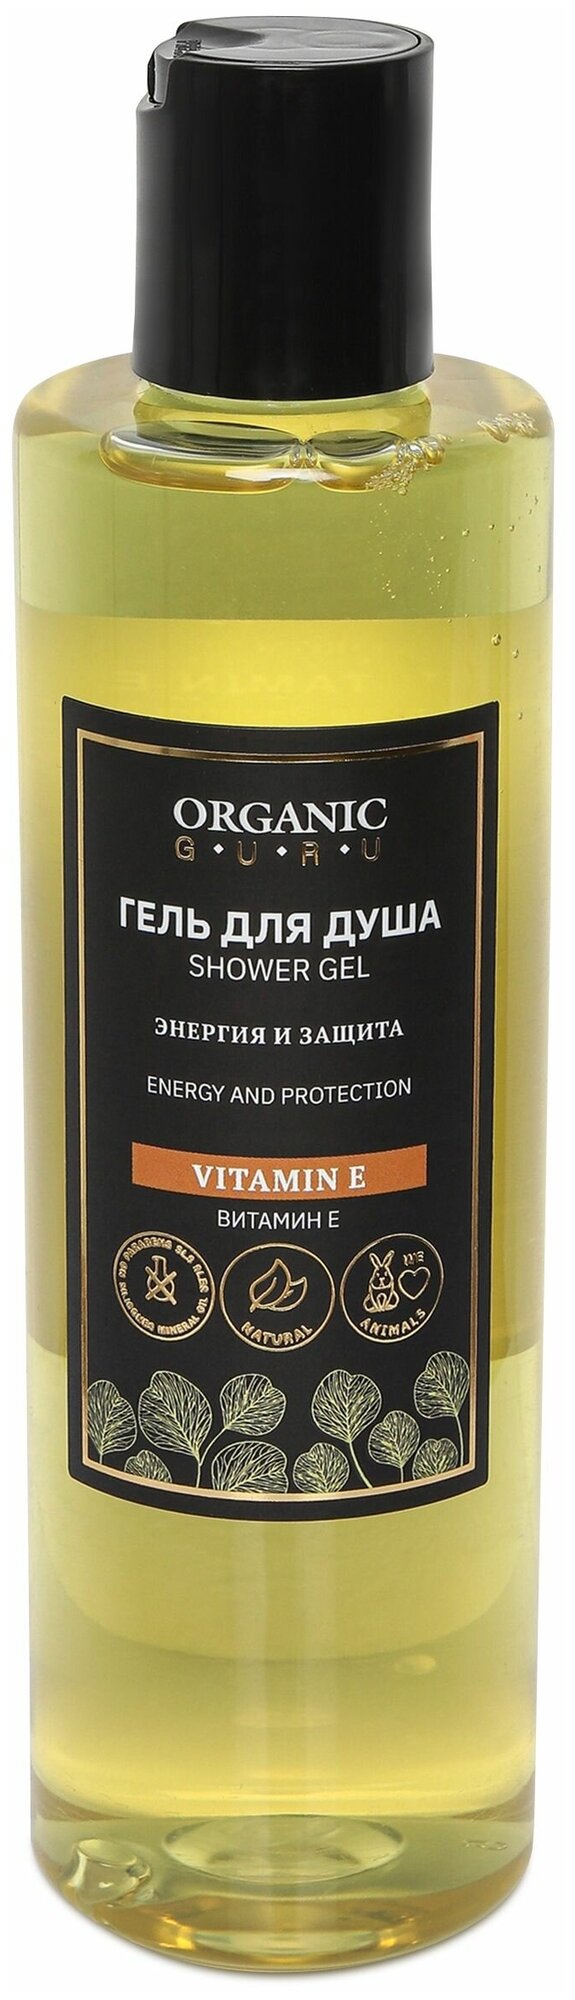 Organic Guru Гель для душа "Витамин Е" Энергия и защита. Без SLS и парабенов, без силикона, бессульфатный, 250 мл.